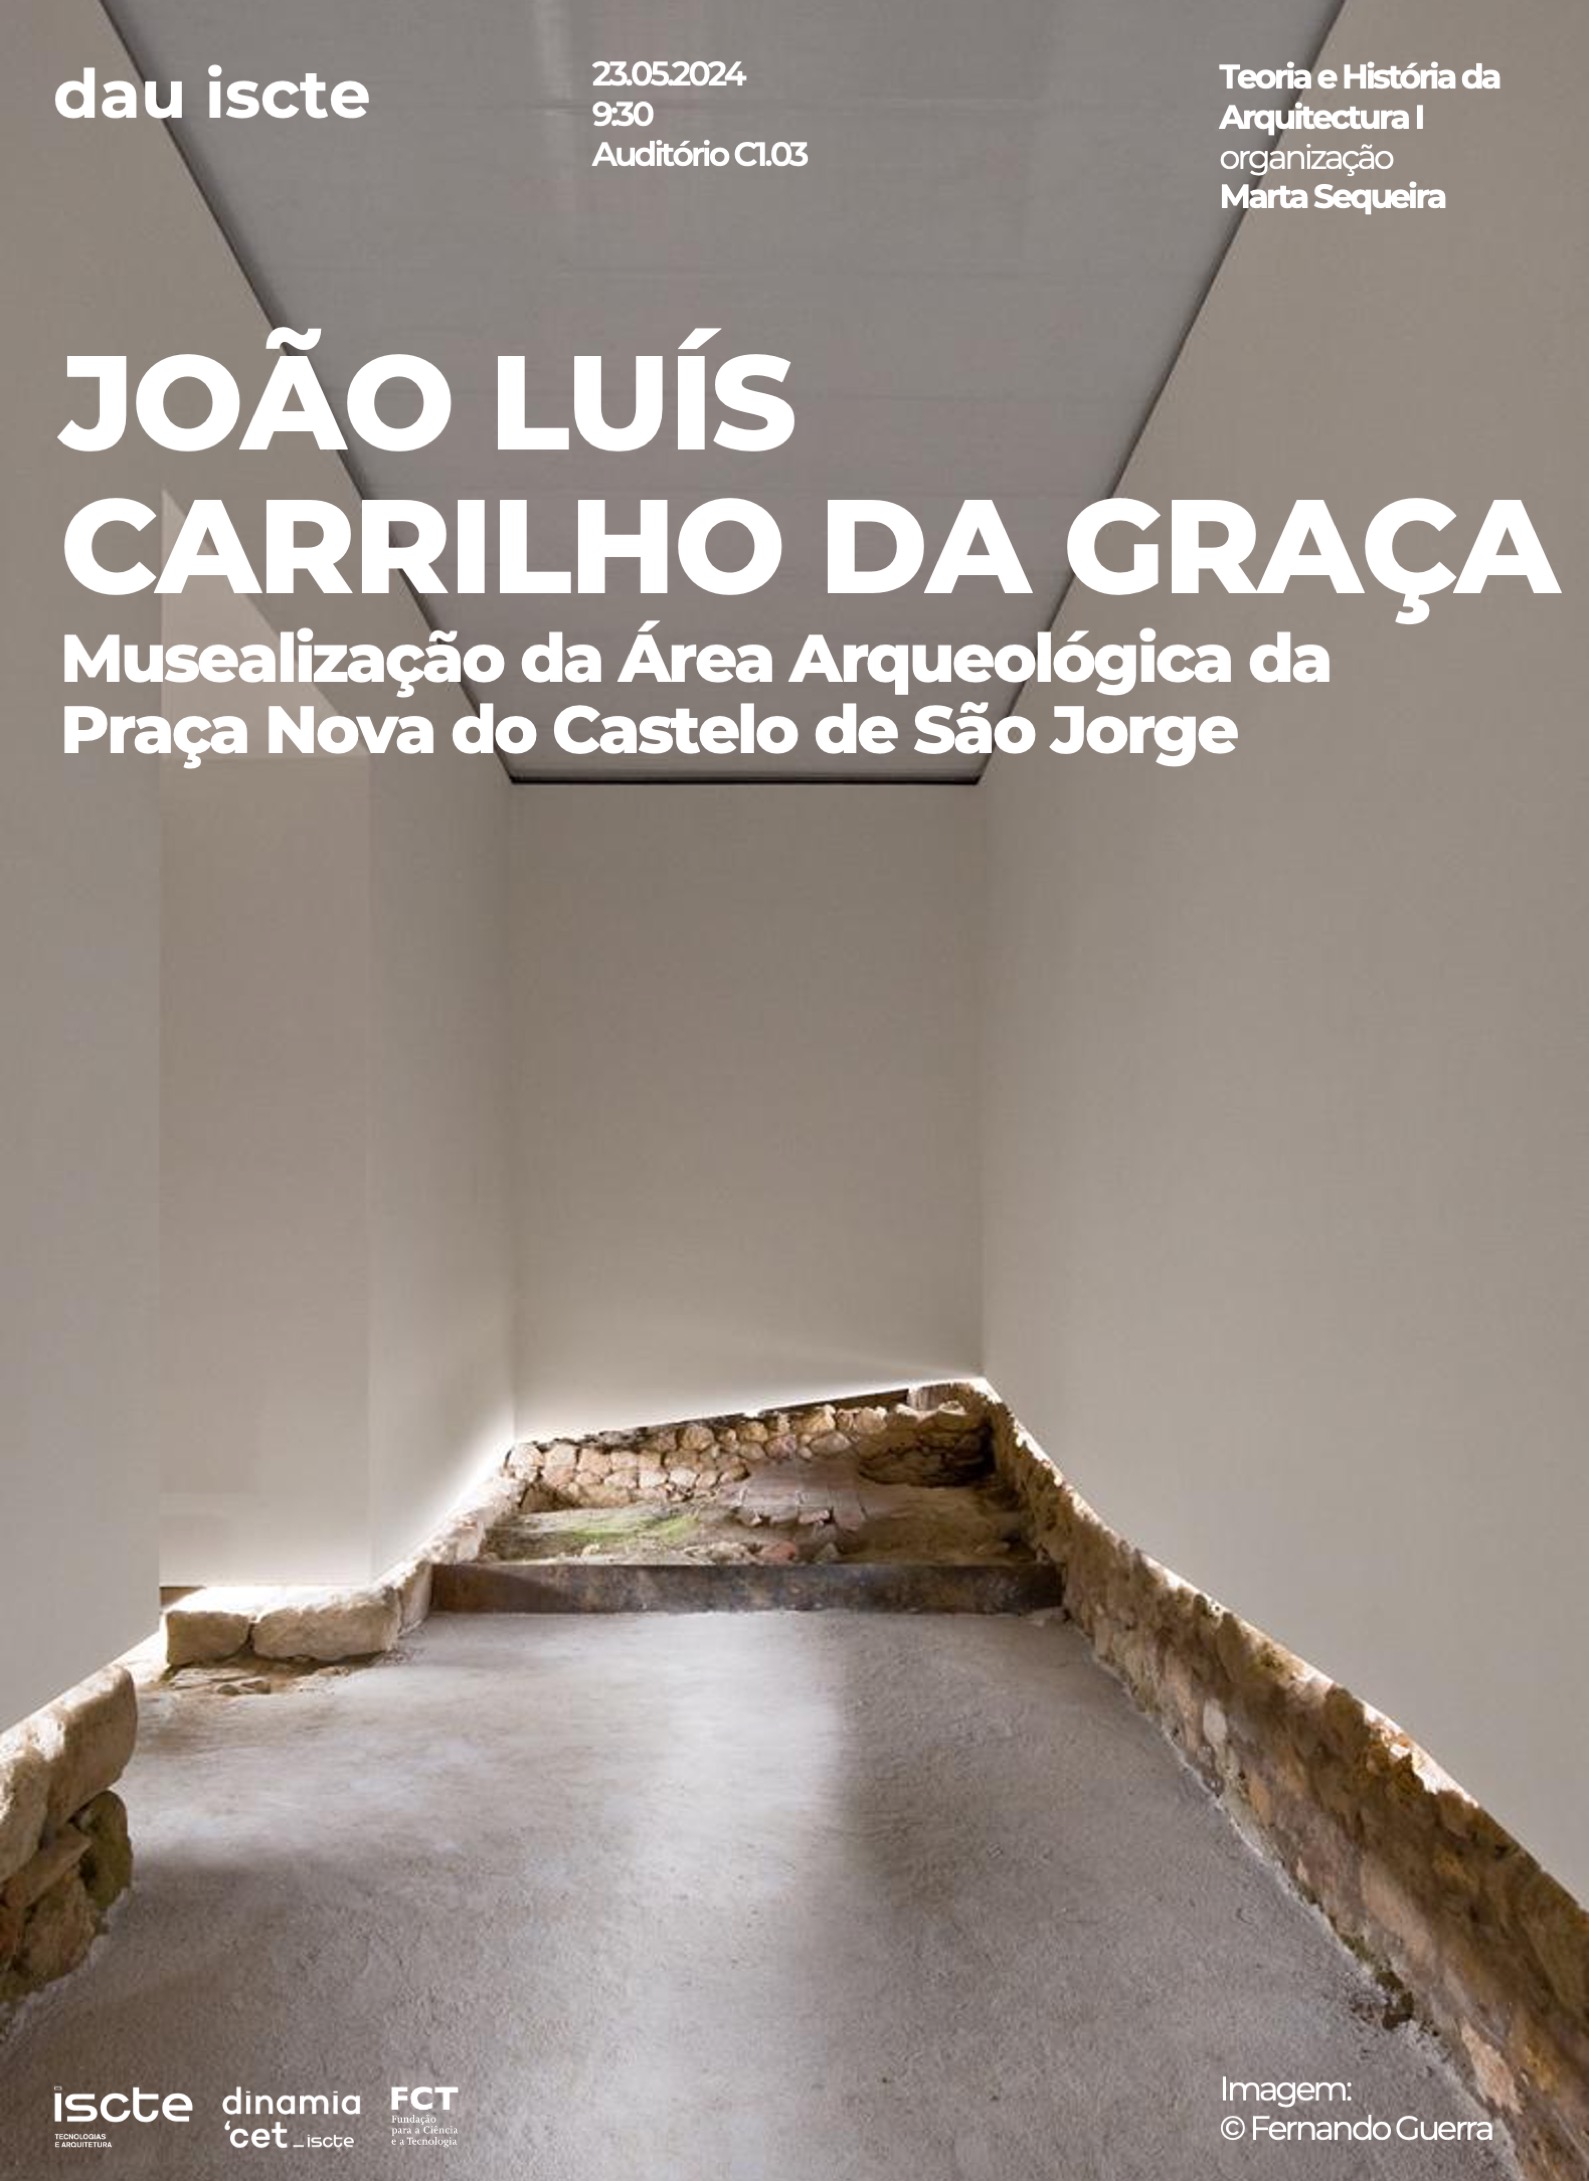 Musealização da Área Arqueológica da Praça Nova do Castelo de São Jorge (conferência de João Luís Carrilho da Graça)